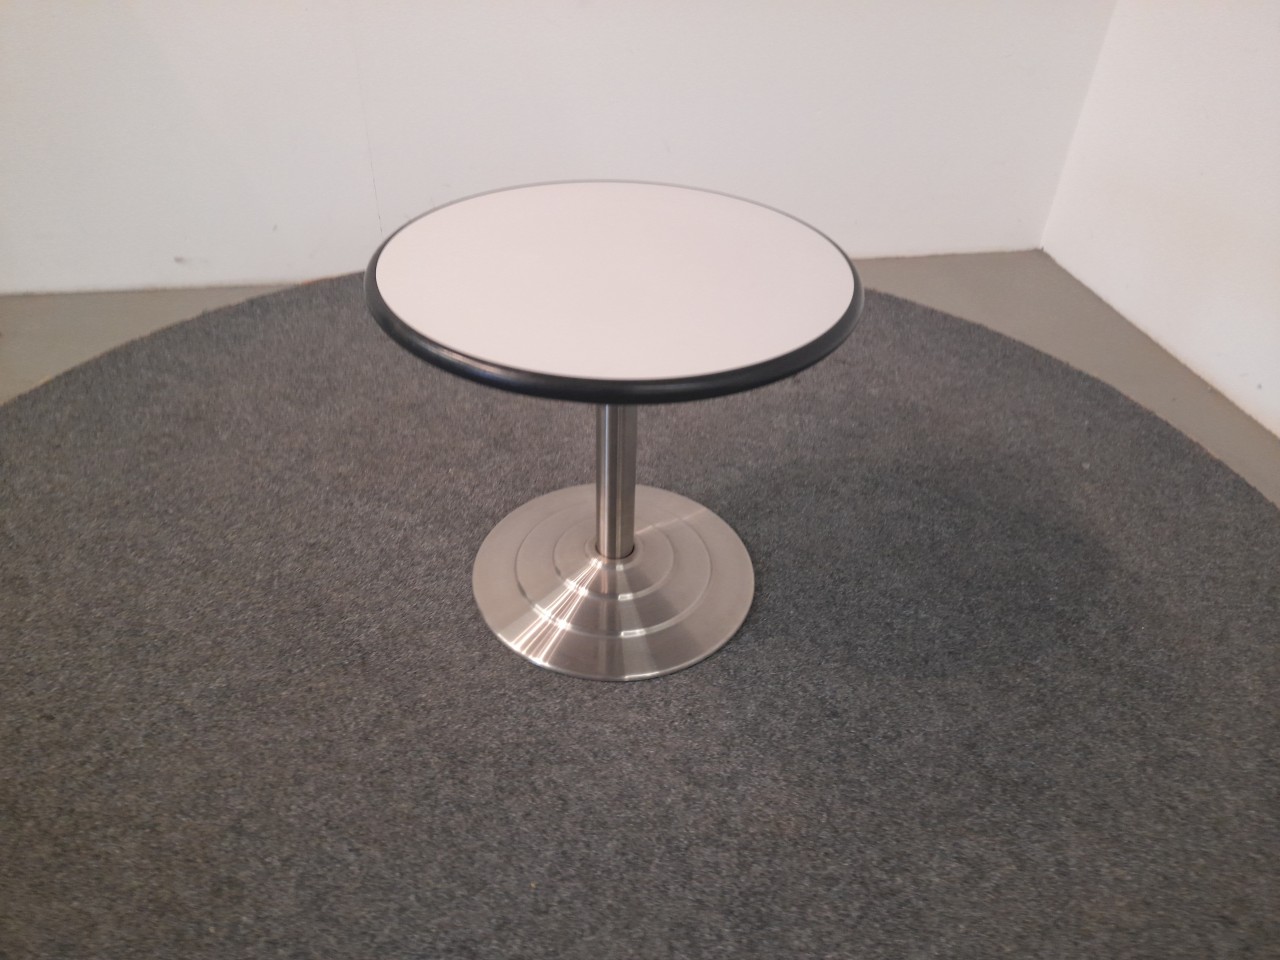 Tisch, rund, lichtgrau,  Ø 62, Stempelfuß metall silber, gebraucht